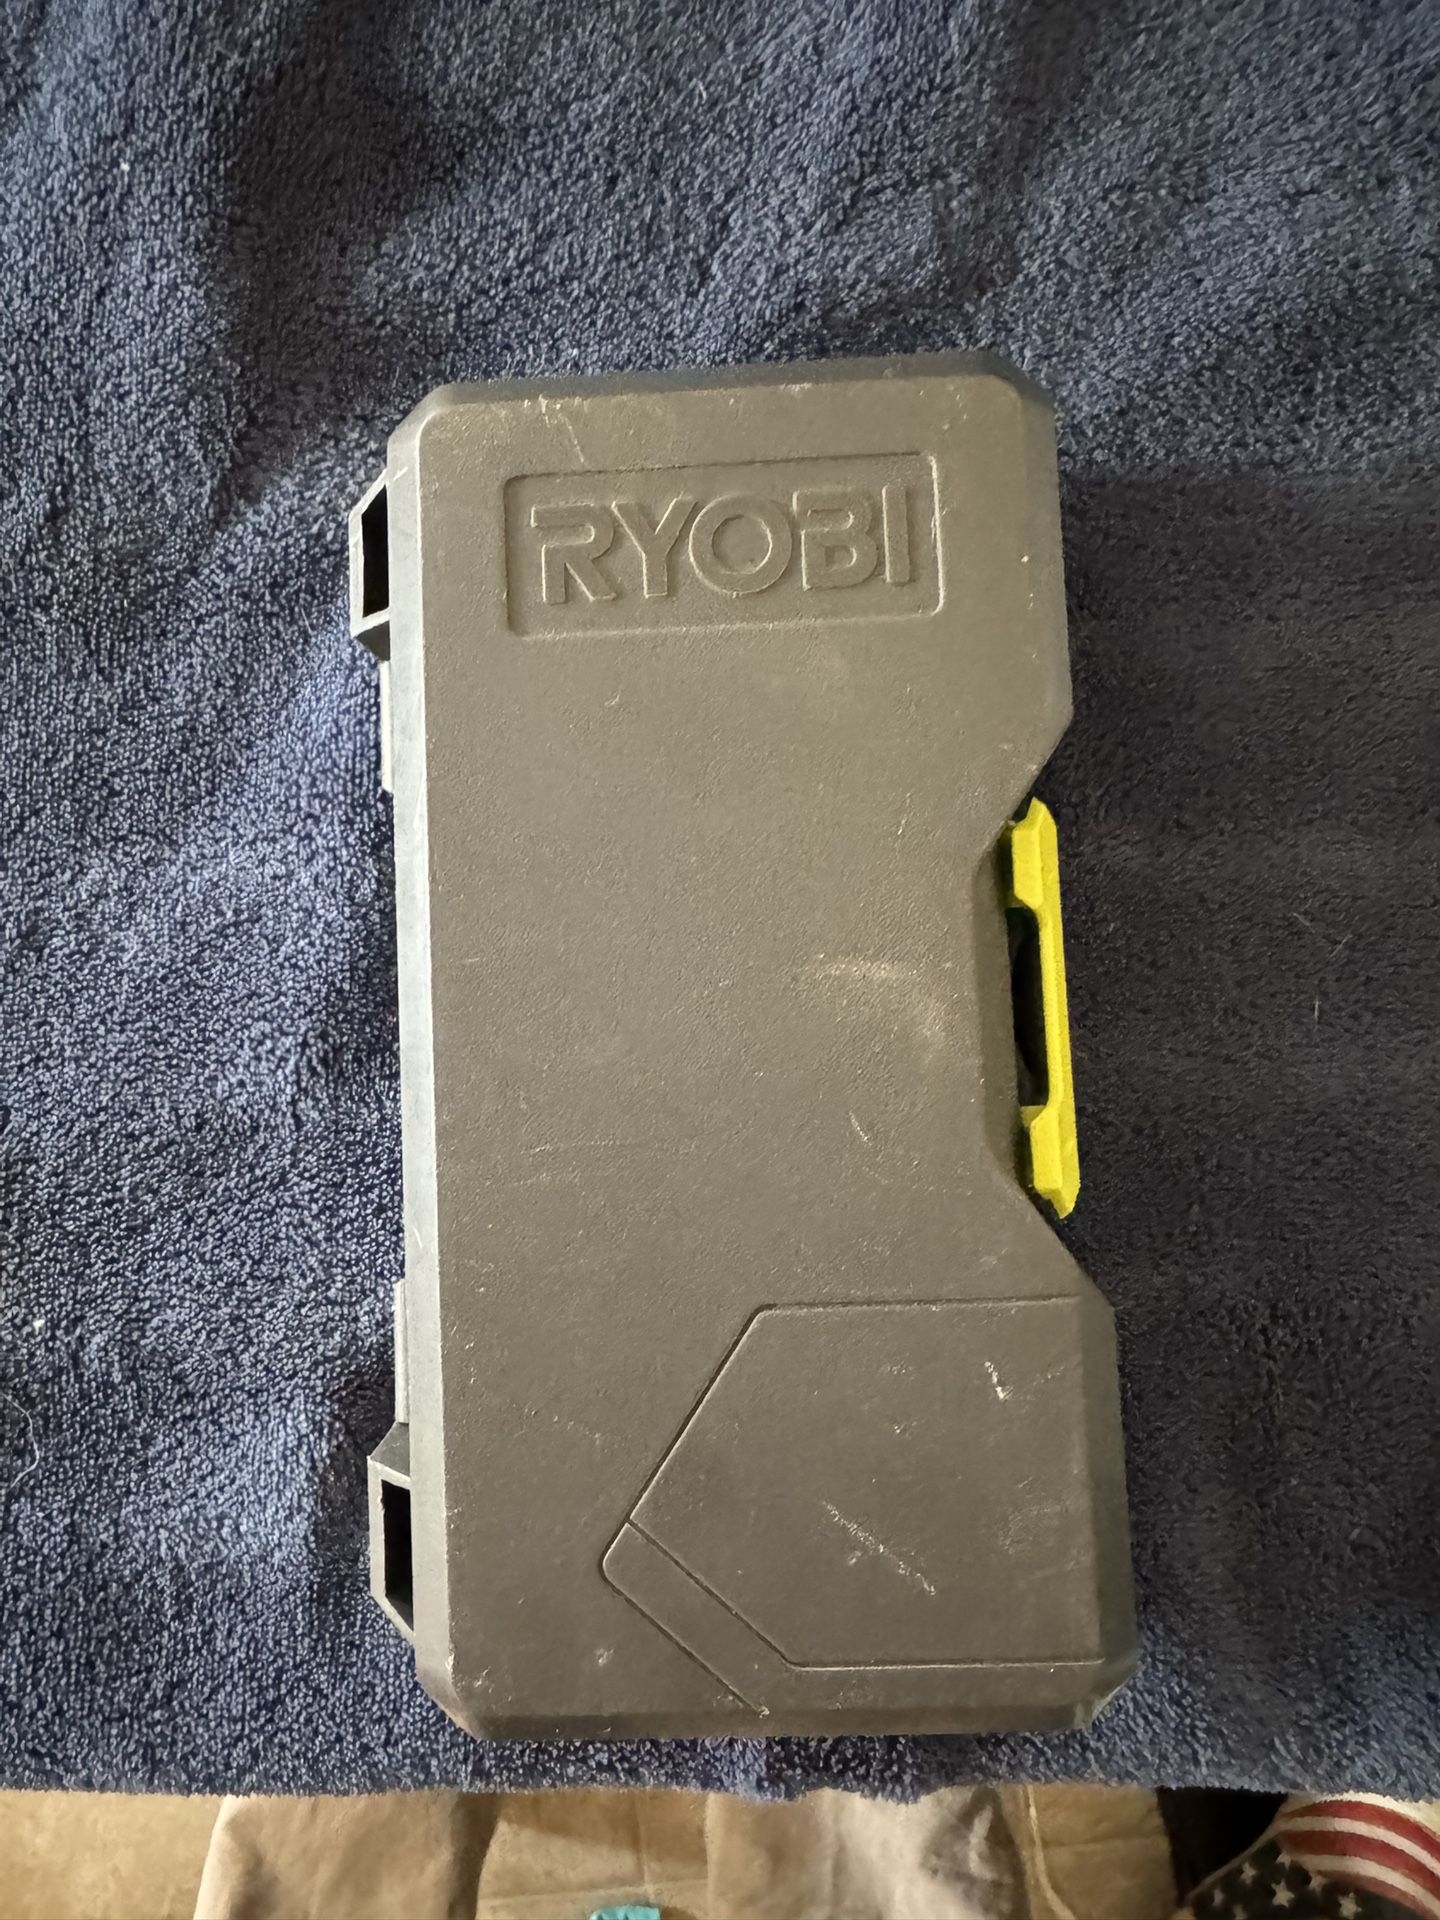 Ryobi Drill Bits